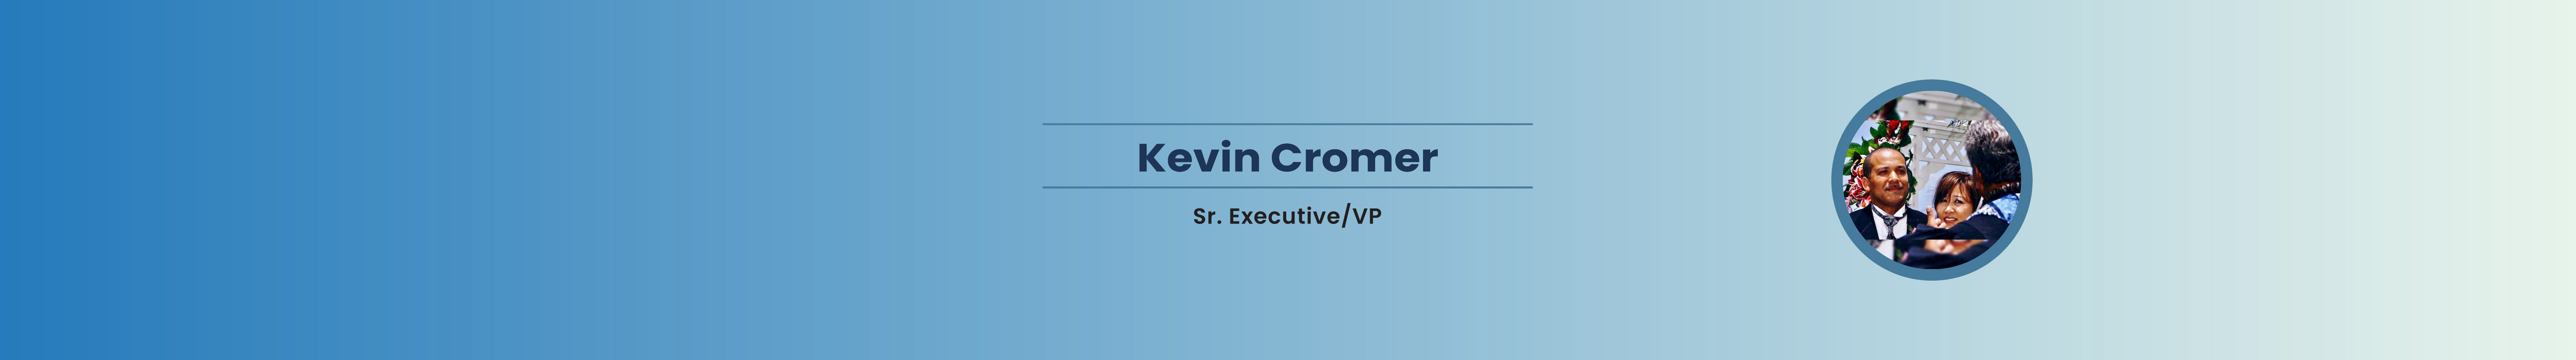 Kevin Cromer 的個人檔案橫幅